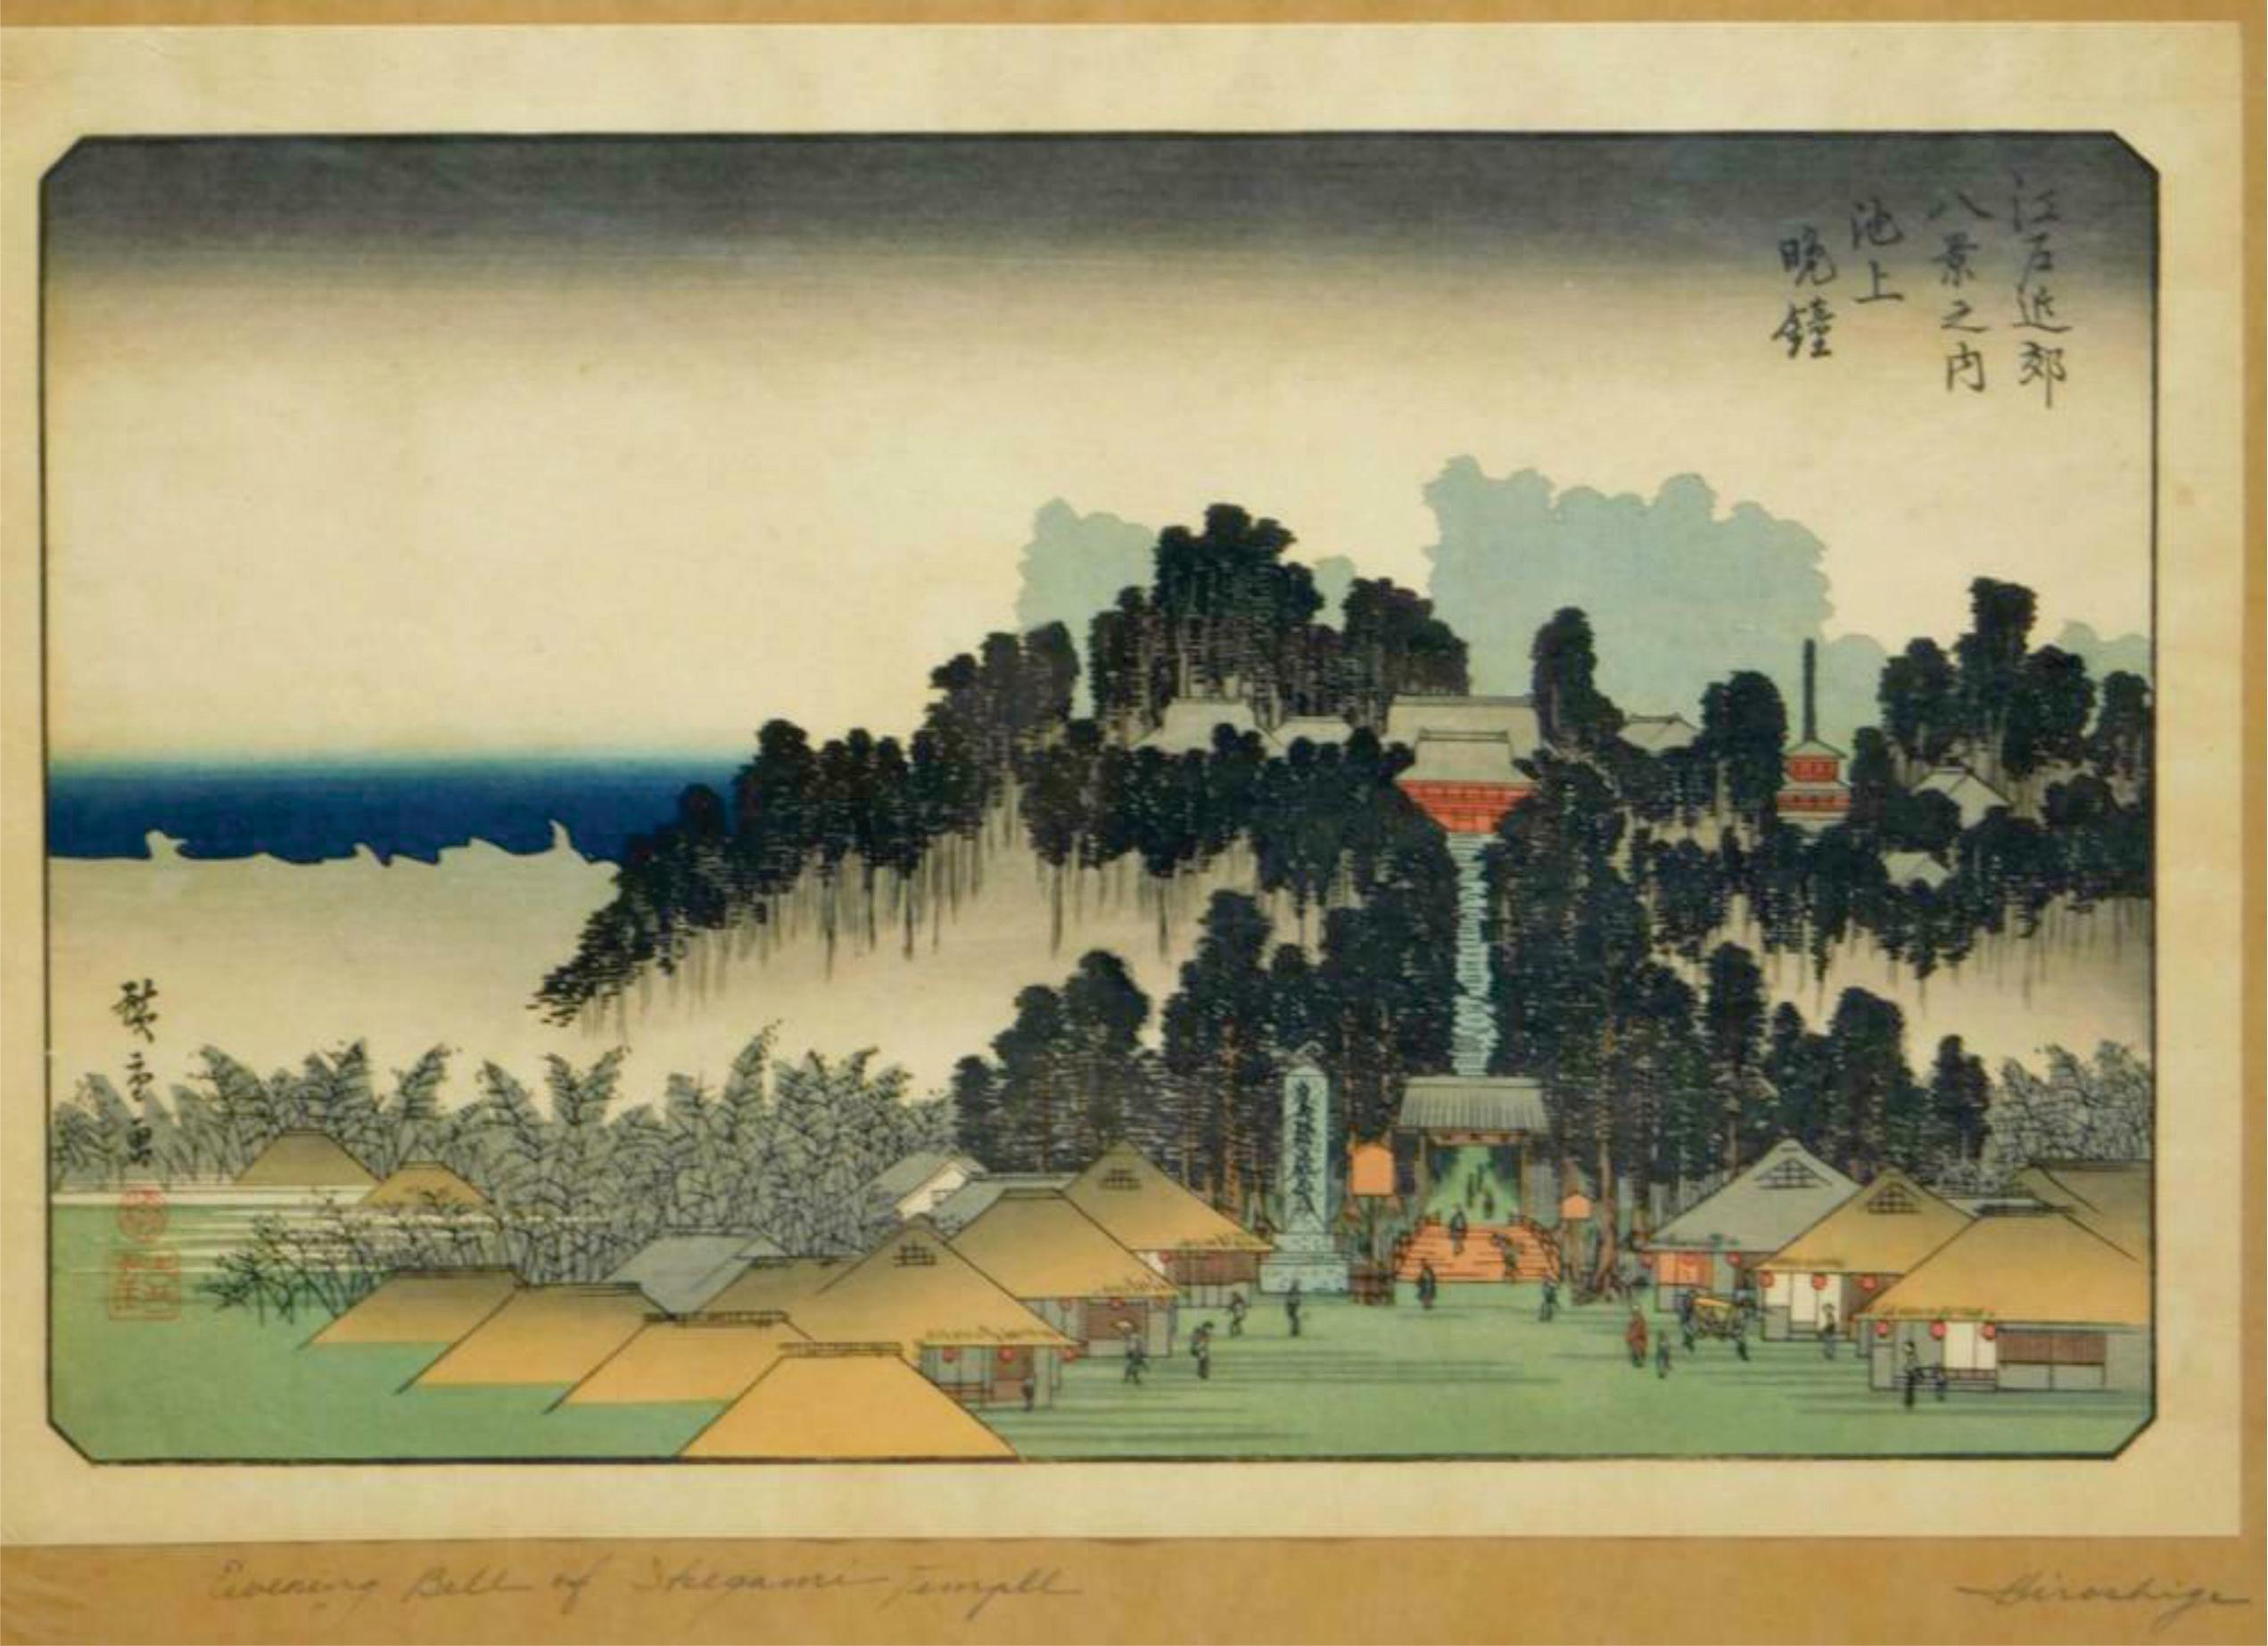 Die Abendglocke von Ikegami ist Teil der acht Ansichten der Umgebung von Edo und des Mannes, der einen Ochsen zwischen Berghängen führt.

Künstler:
Utagawa Hiroshige gilt als Meister des Ukiyo-e-Holzschnitts. Er schuf 8.000 Drucke, die das